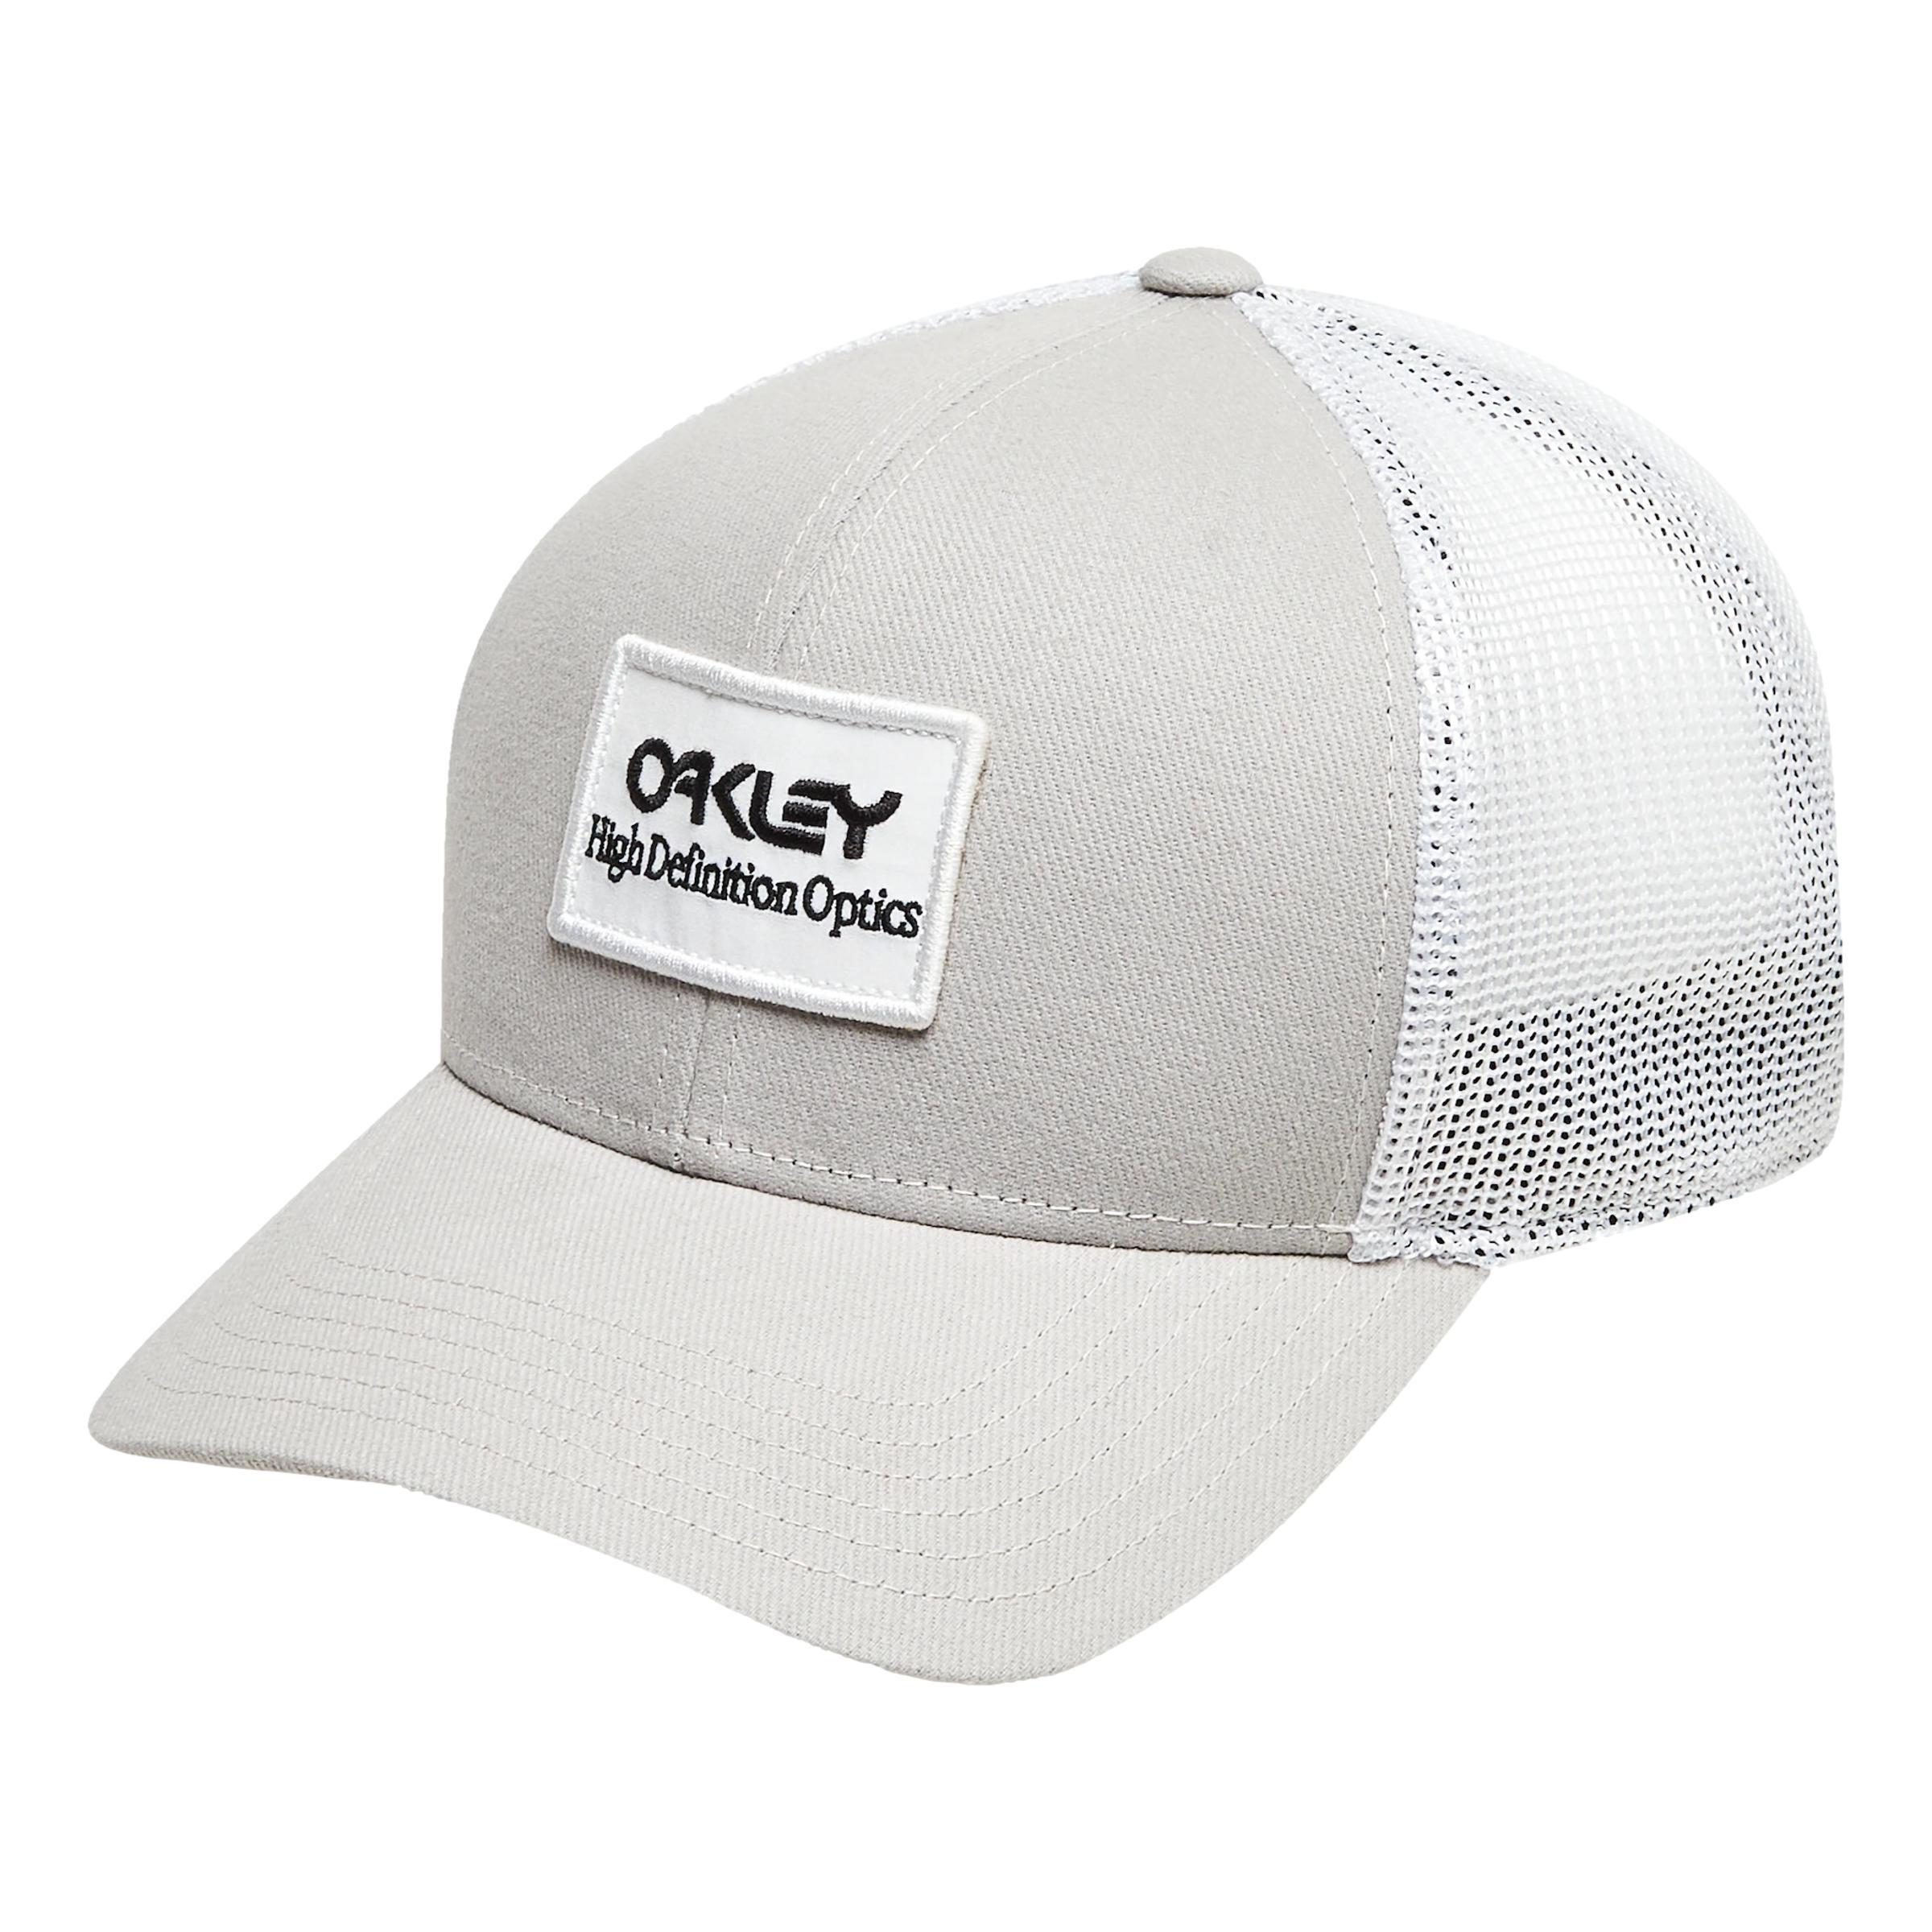 OAKLEY Oakley B1B HDO PATCH TRUCKER HAT Stone Gray - U